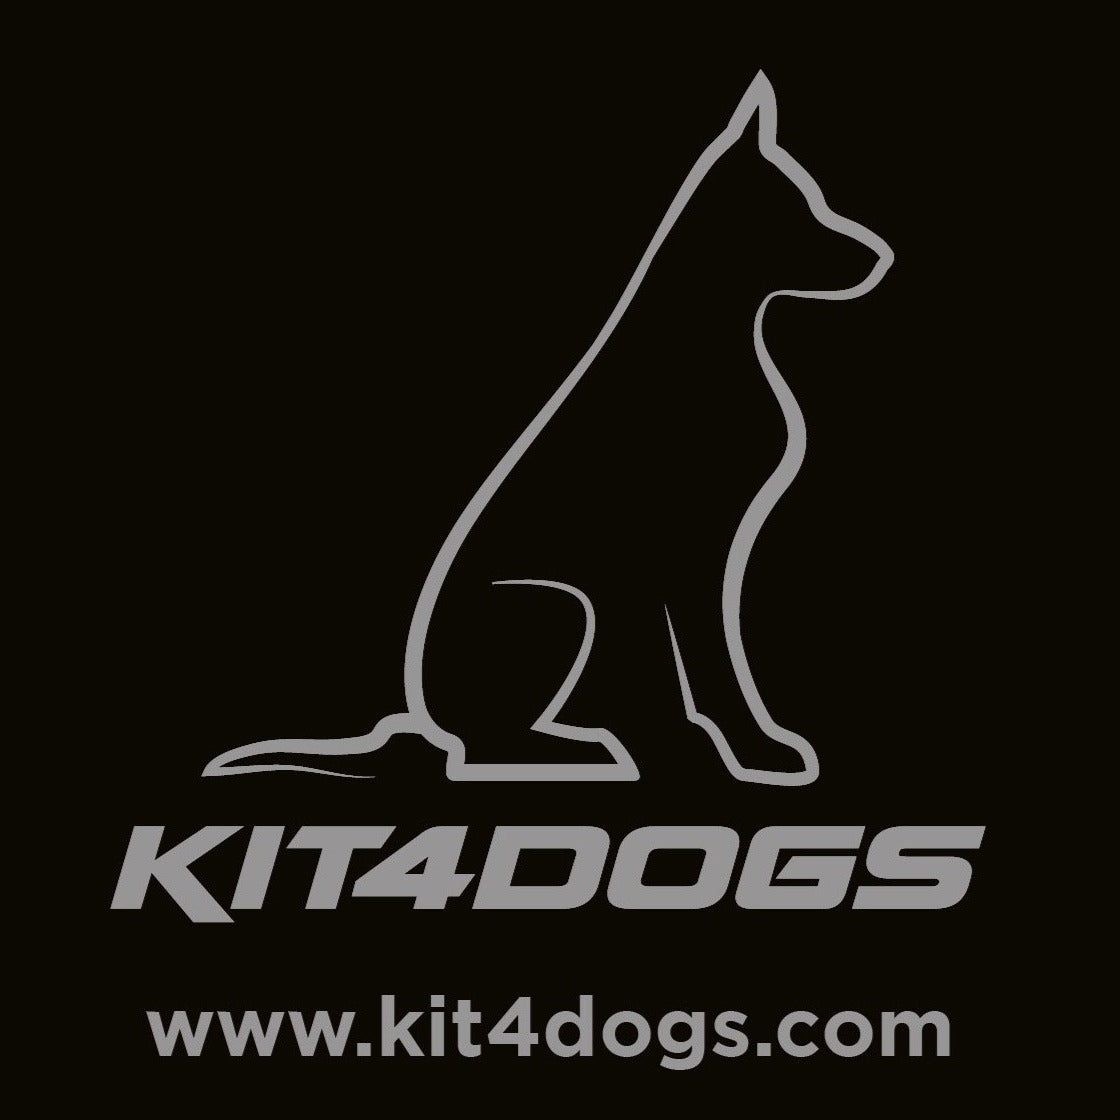 Kit4dogs Sticker - Kit4dogs